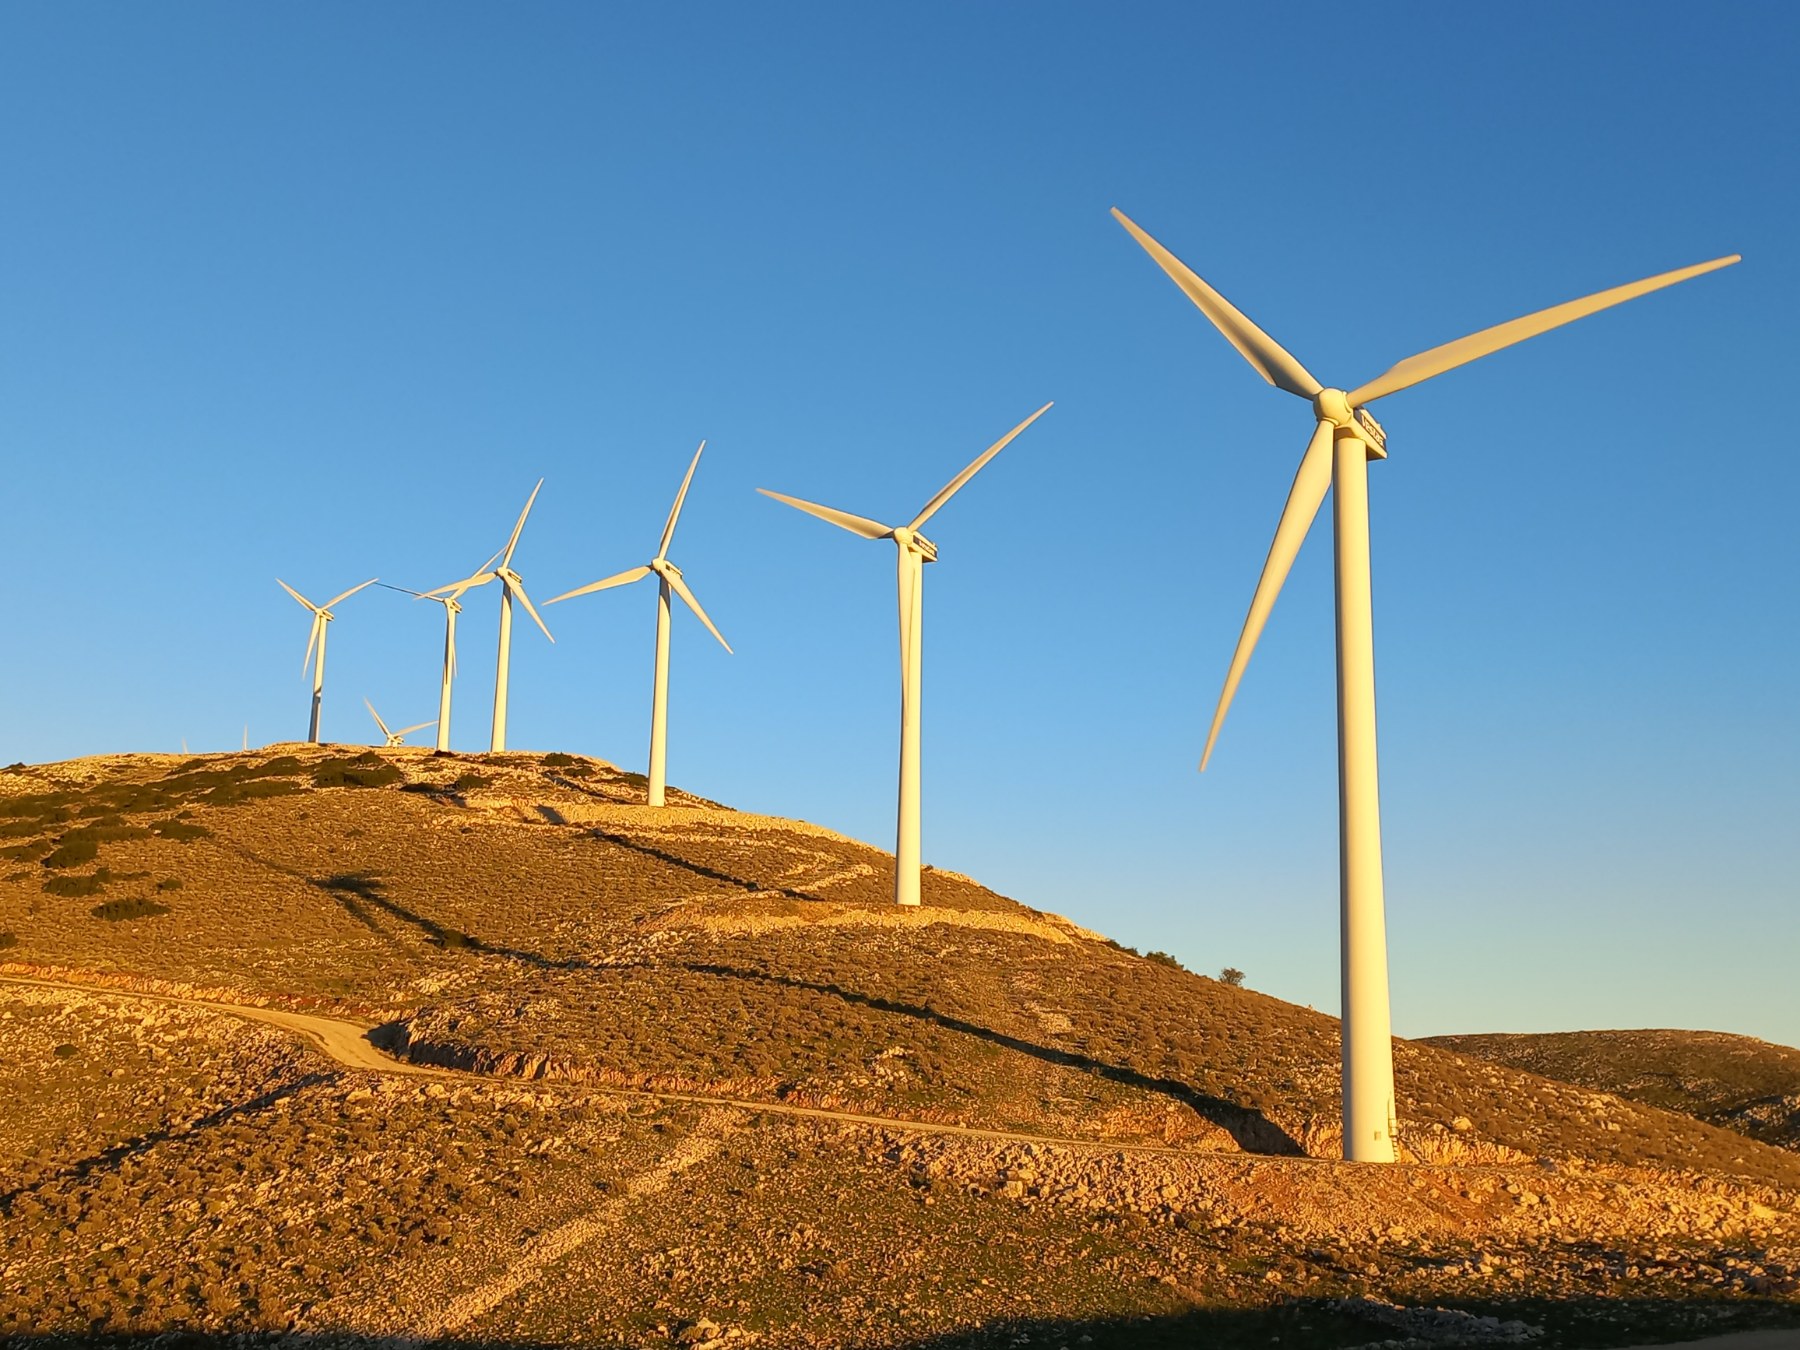 Ολοκληρώθηκε η πώληση του 50% της Enel Green Power Hellas στη Macquarie Asset Management